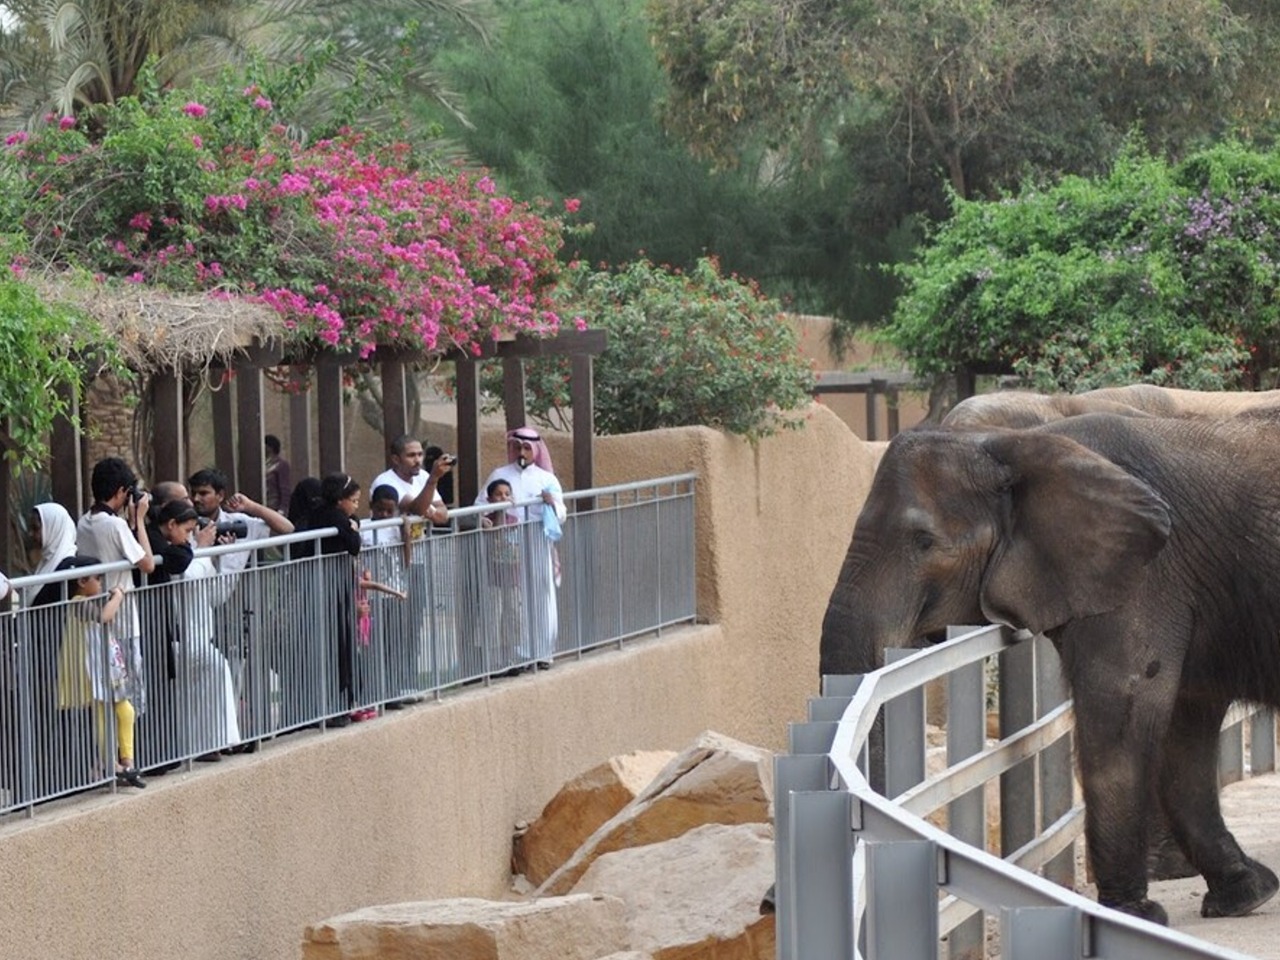 Зоопарк Dubai Safari Park | Цена 200$, отзывы, описание экскурсии